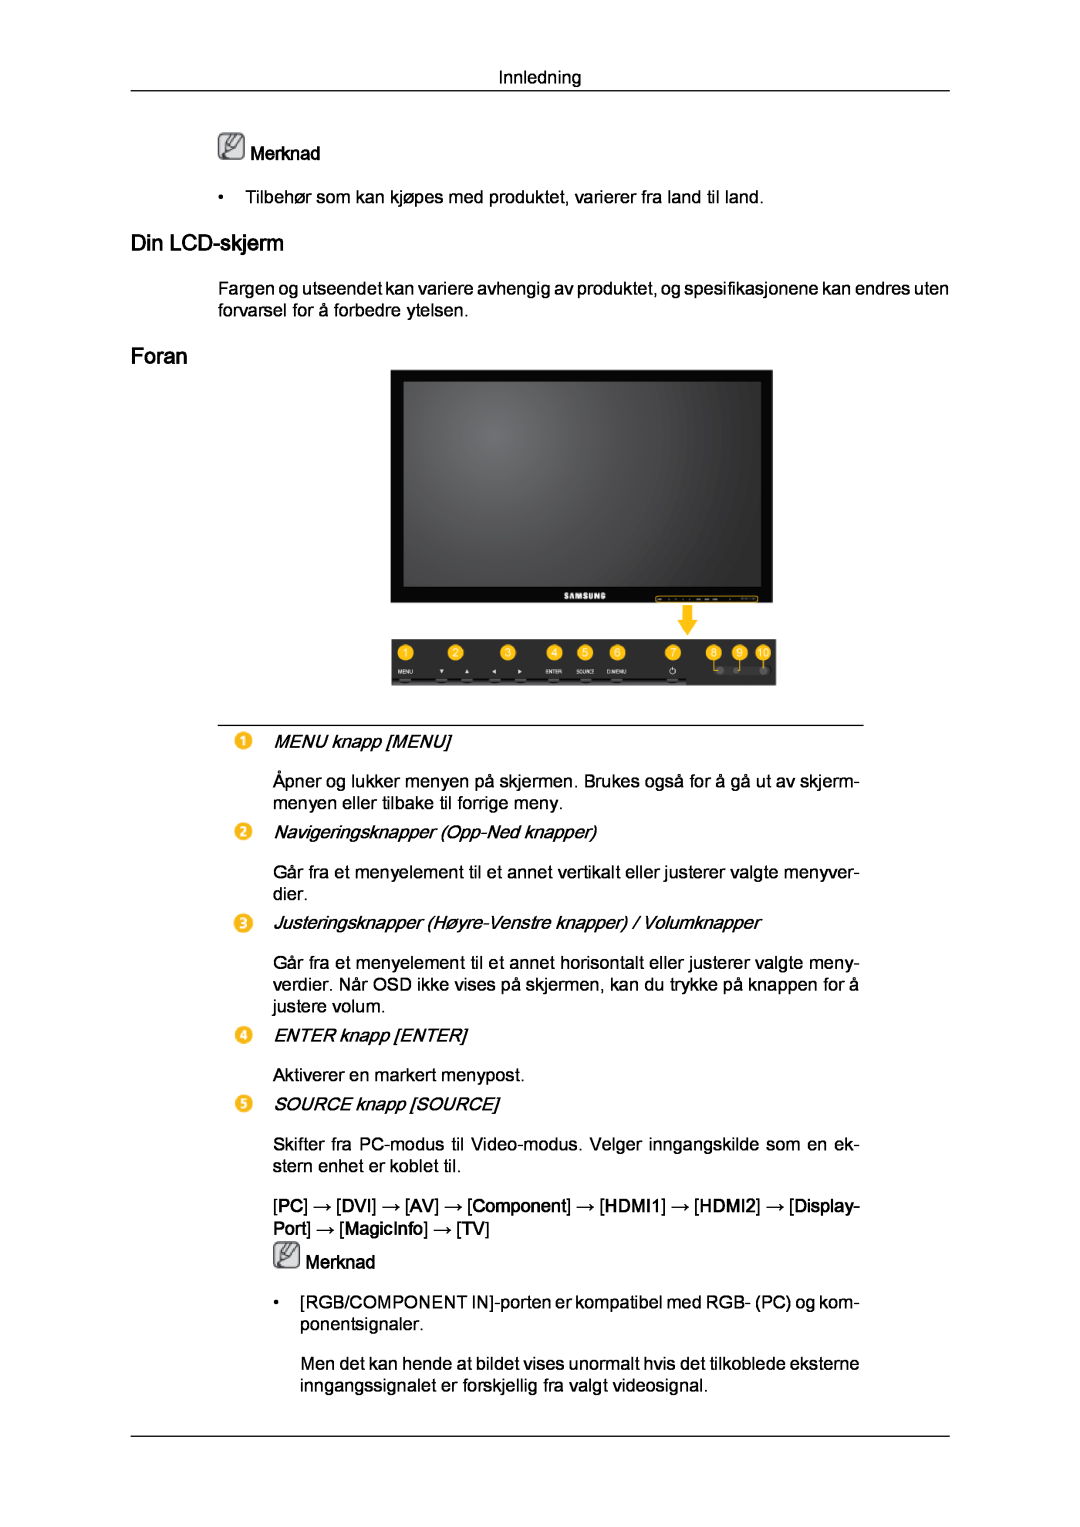 Samsung LH46CRPMBD/EN manual Din LCD-skjerm, Foran, MENU knapp MENU, Navigeringsknapper Opp-Ned knapper, ENTER knapp ENTER 